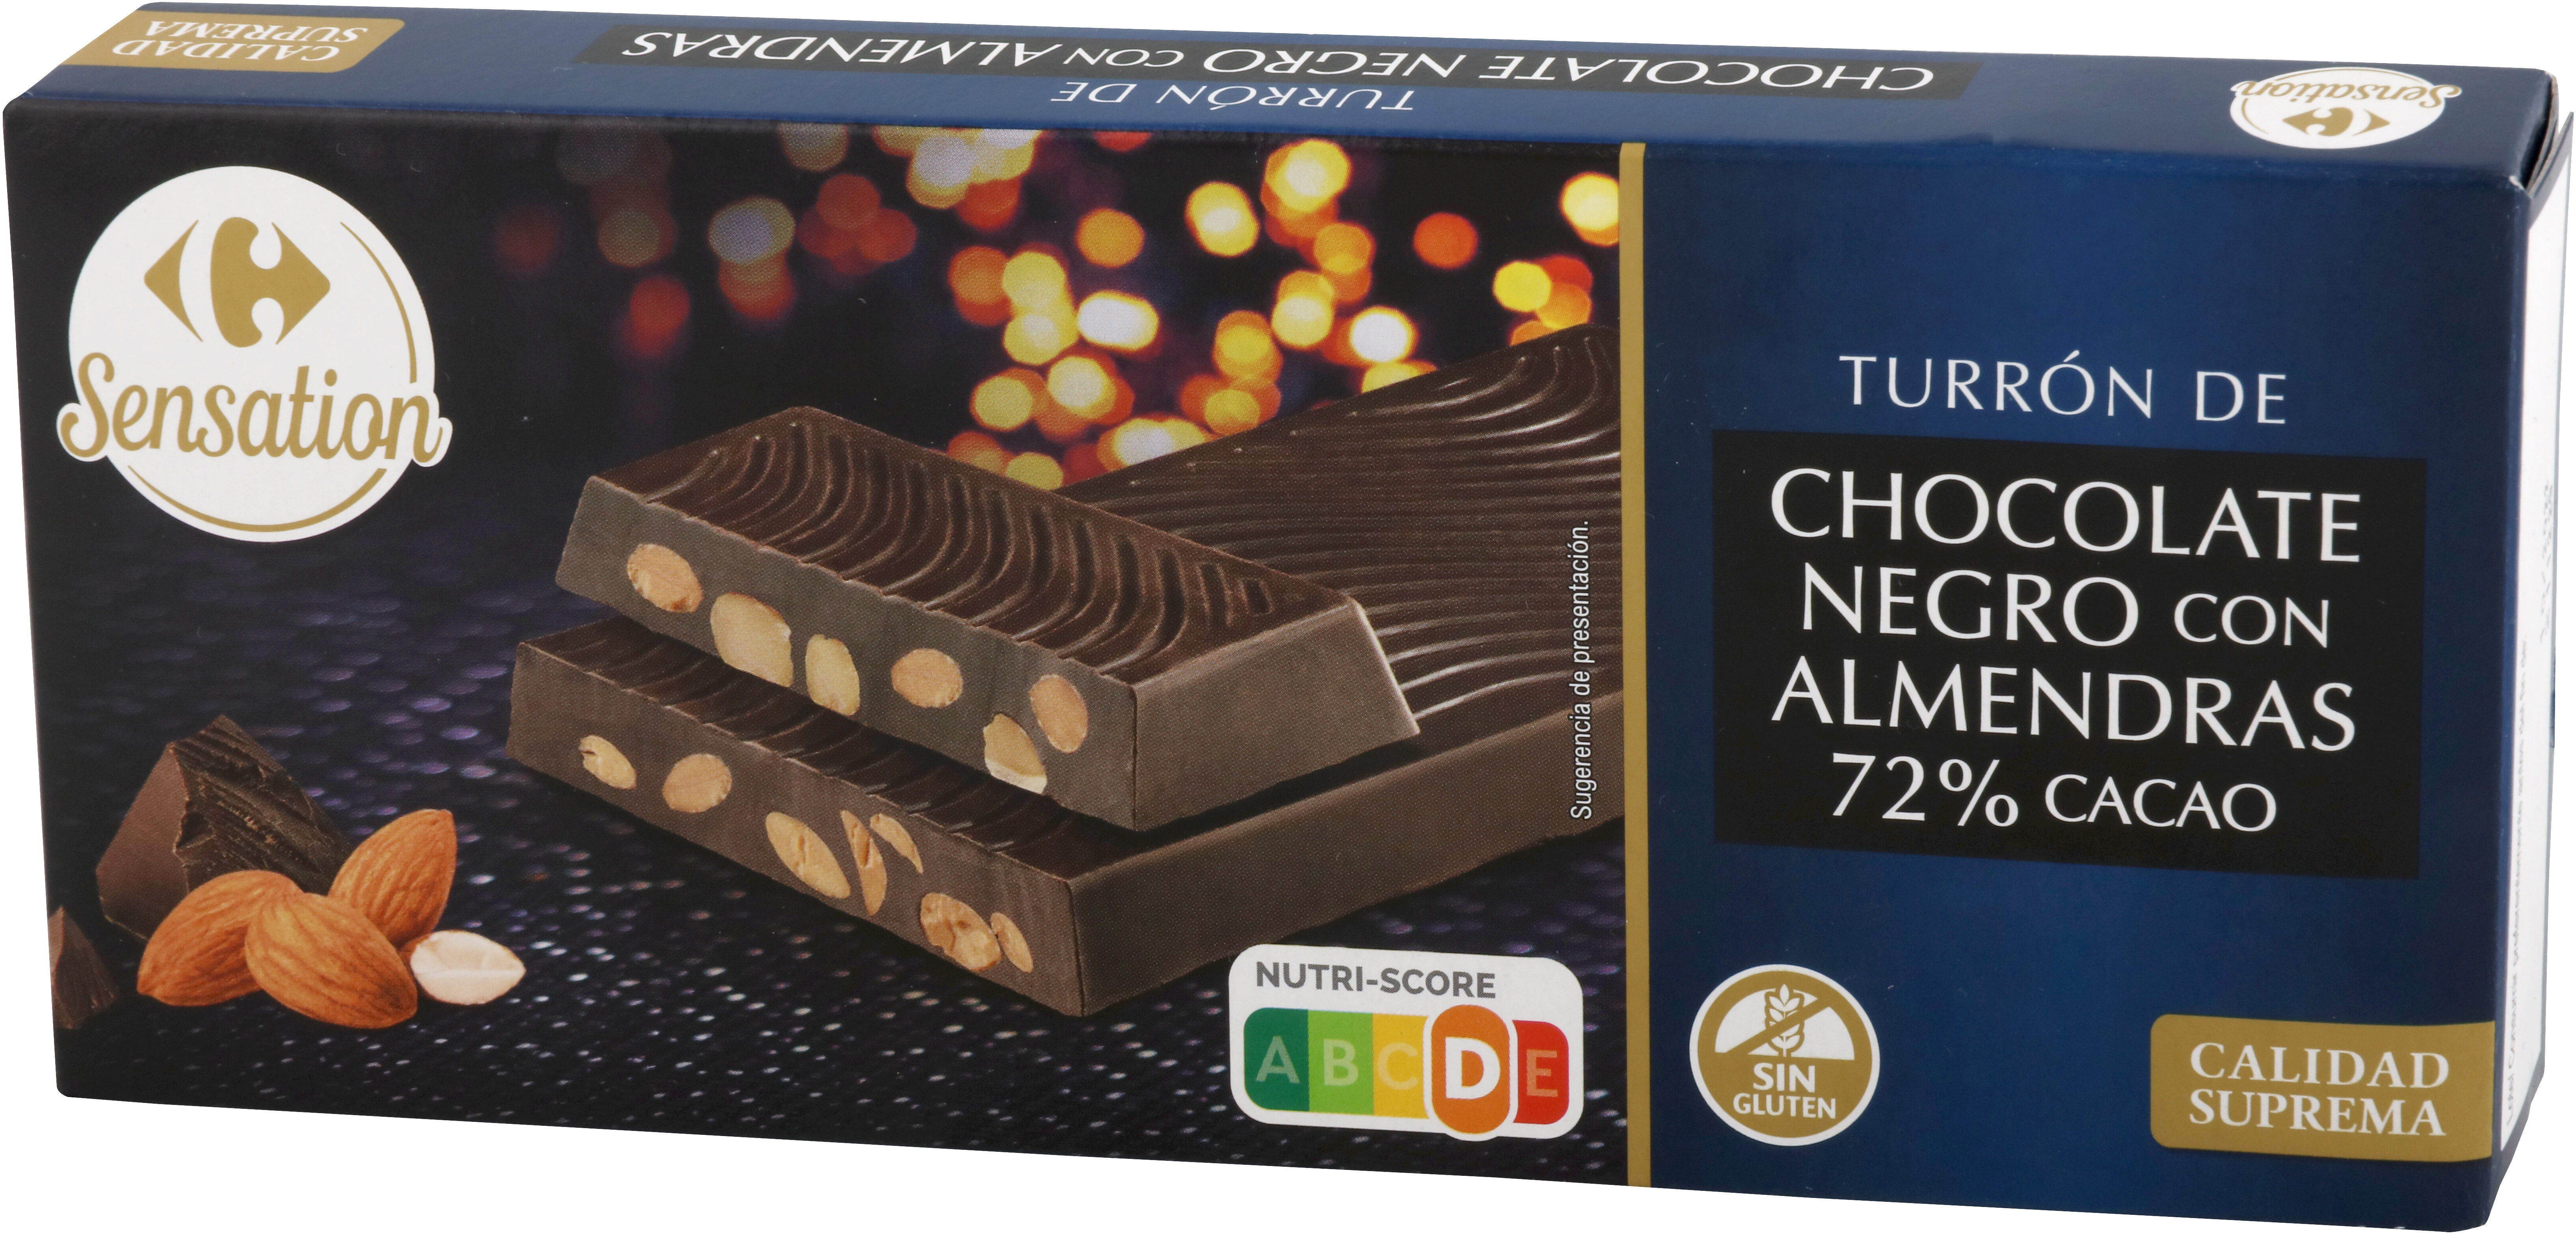 Turrón chocolate negro 72% cacao con almendras - Product - es